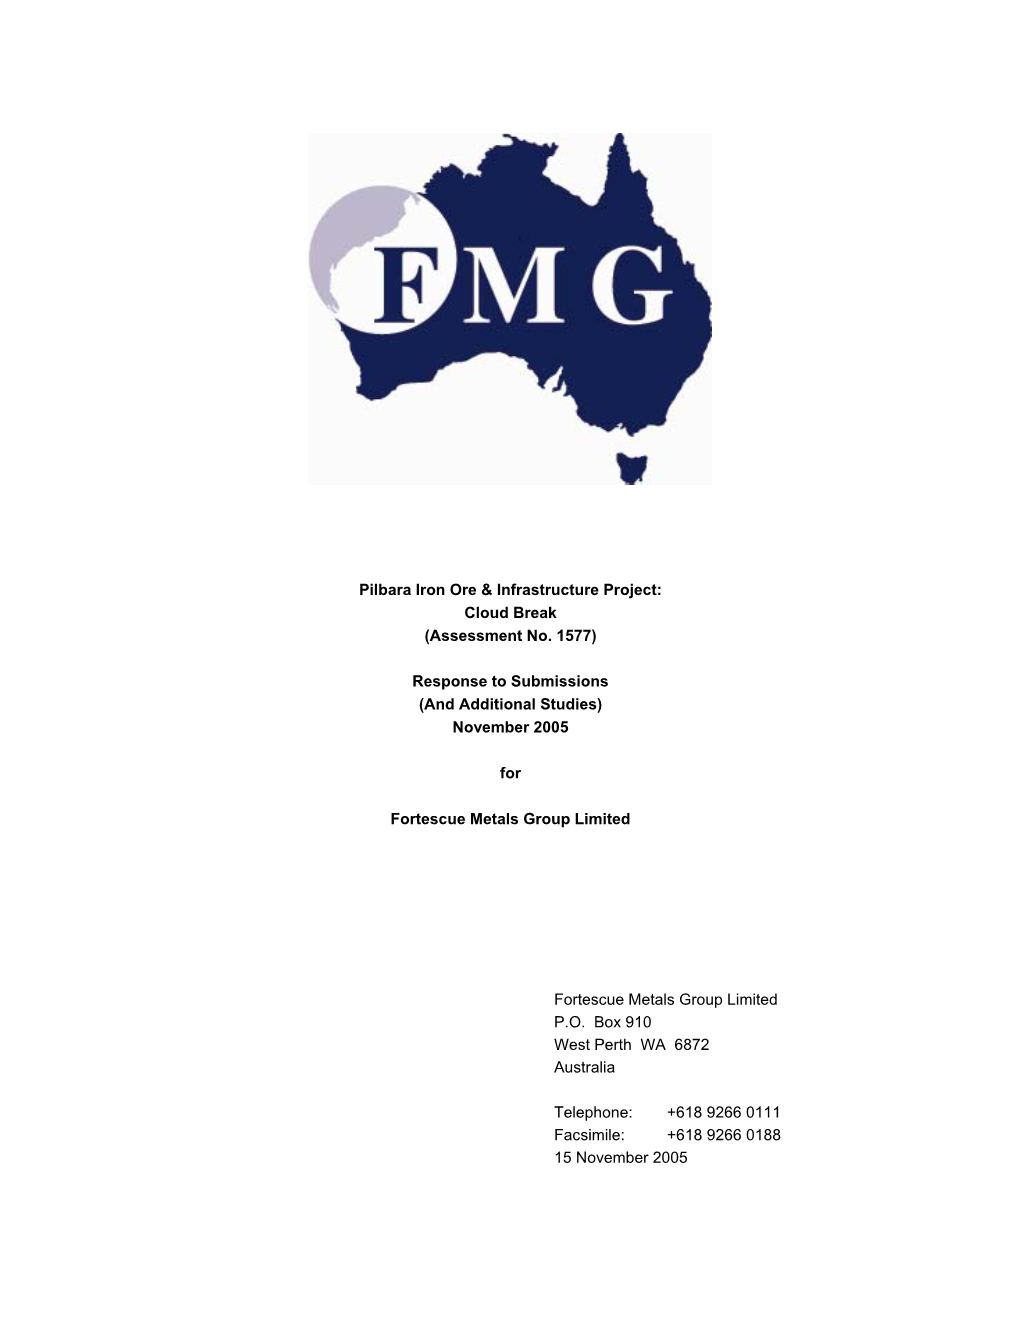 Pilbara Iron Ore & Infrastructure Project: Cloud Break (Assessment No. 1577)